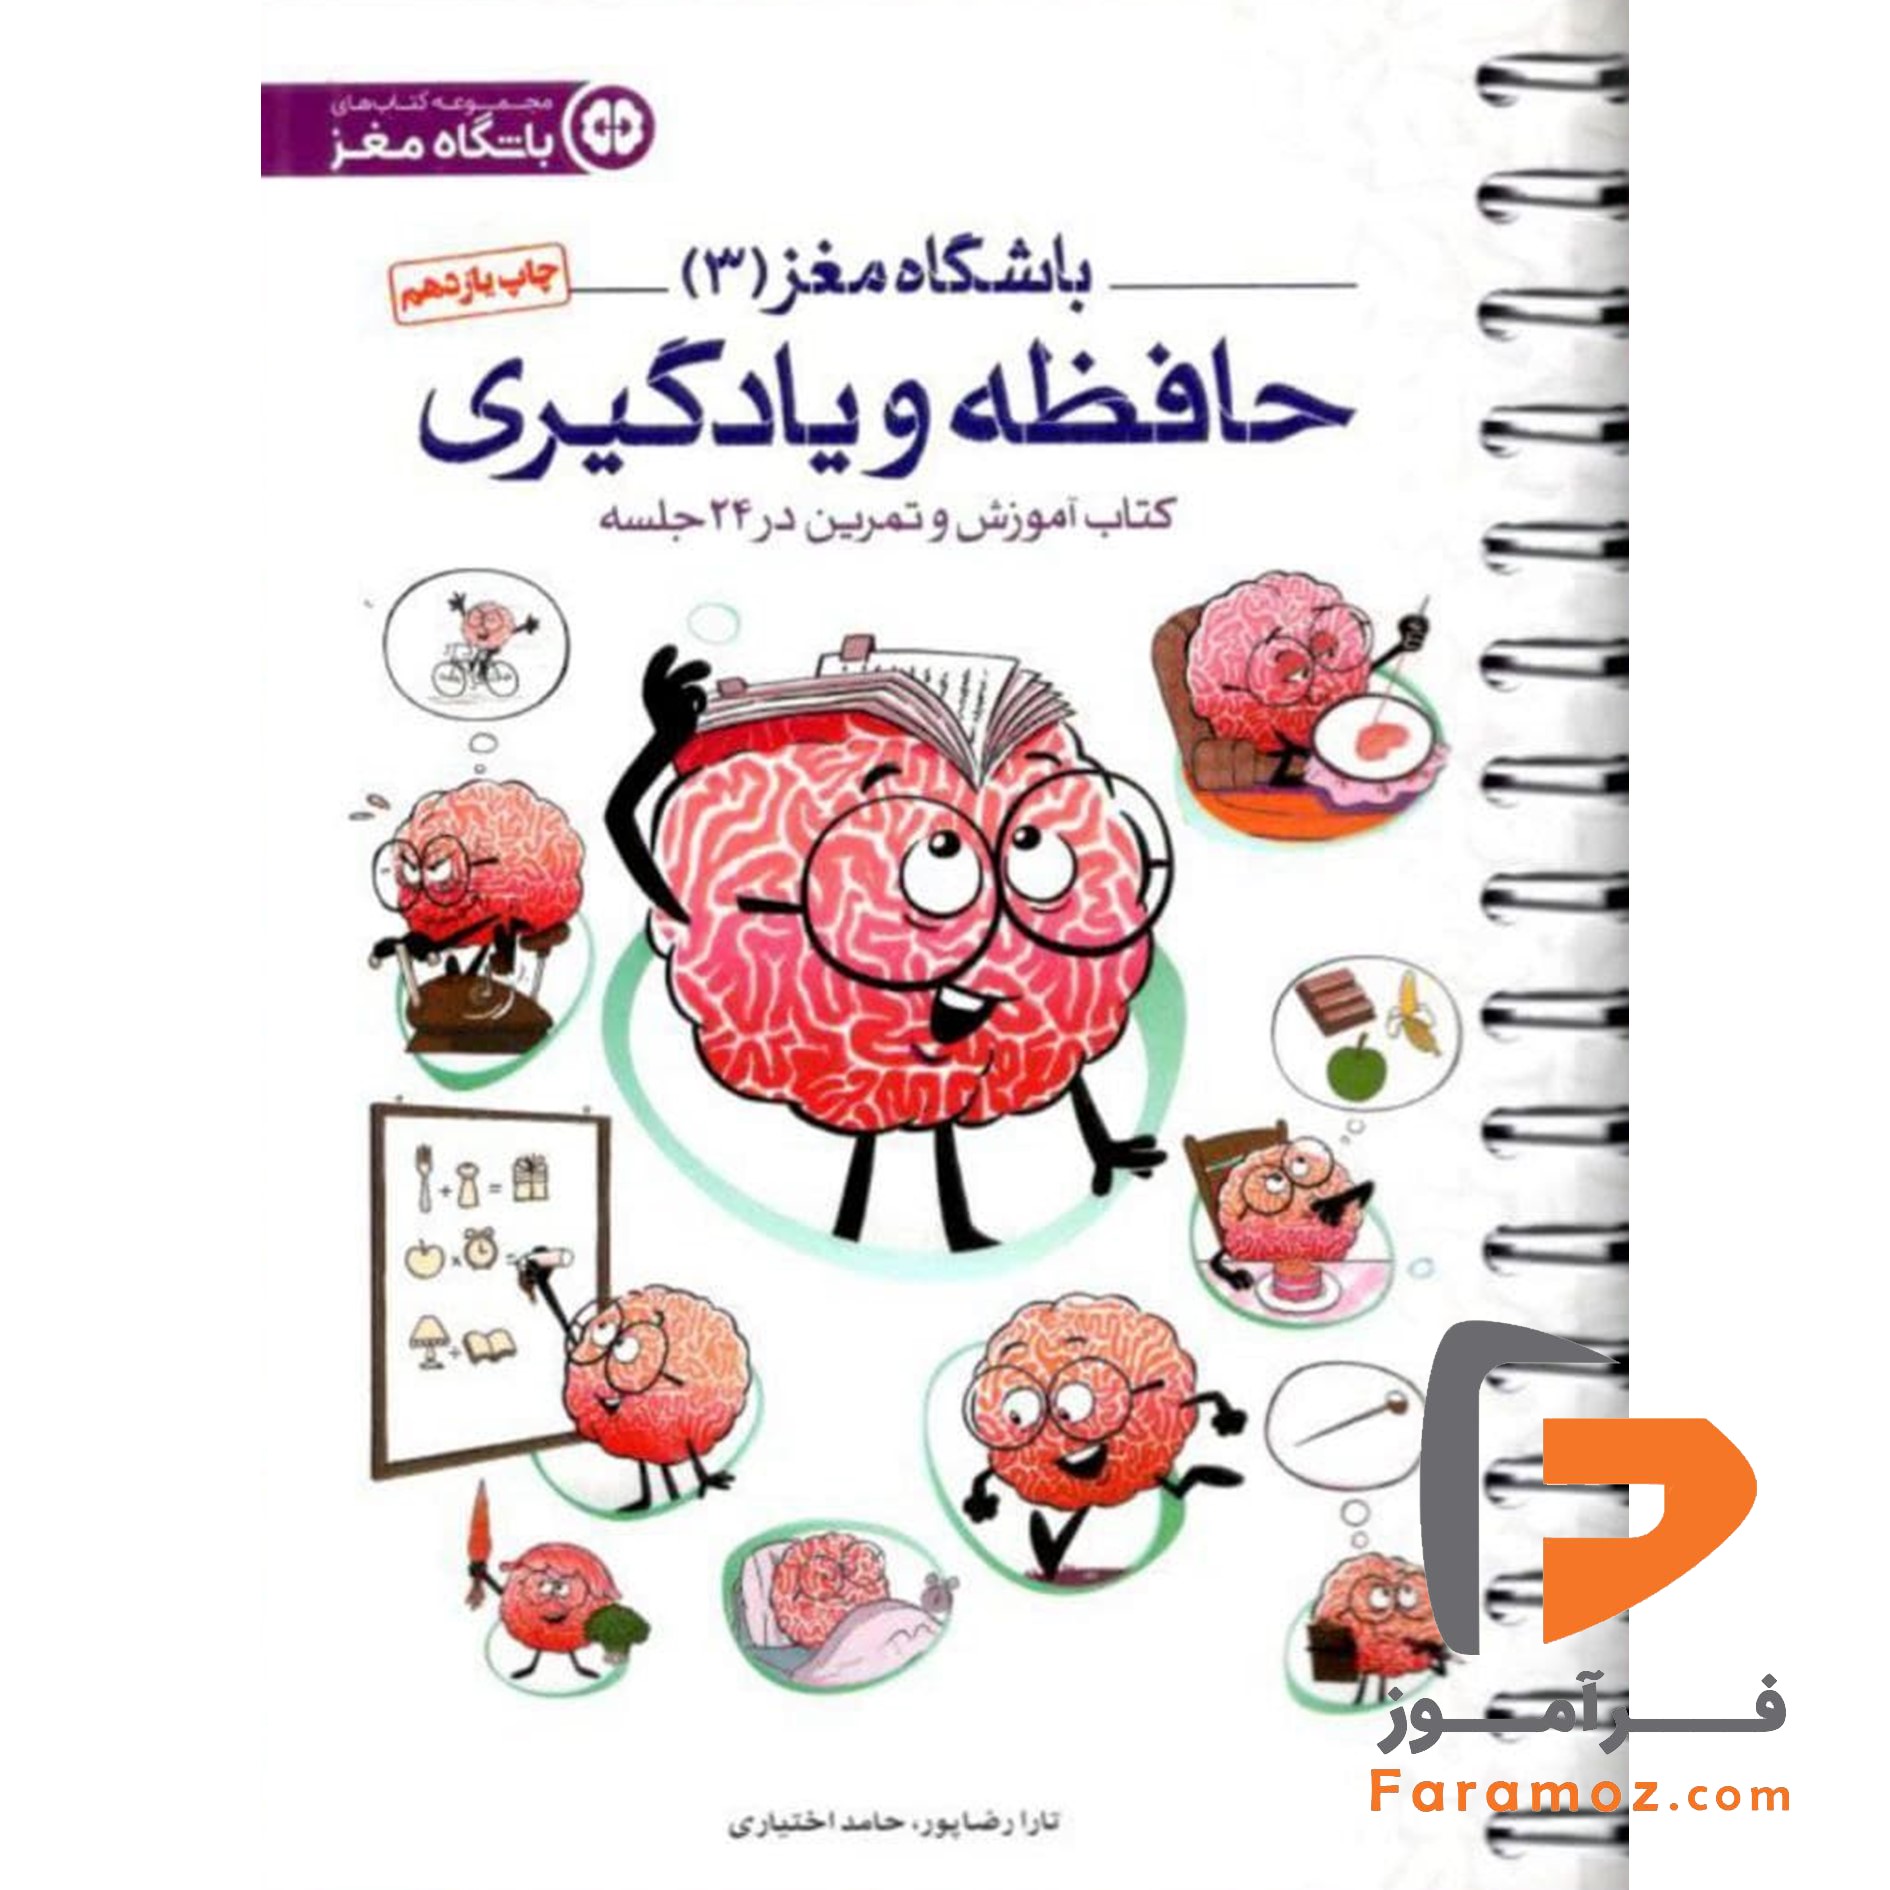 کتاب باشگاه مغز (۳) حافظه و یادگیری مهرسا